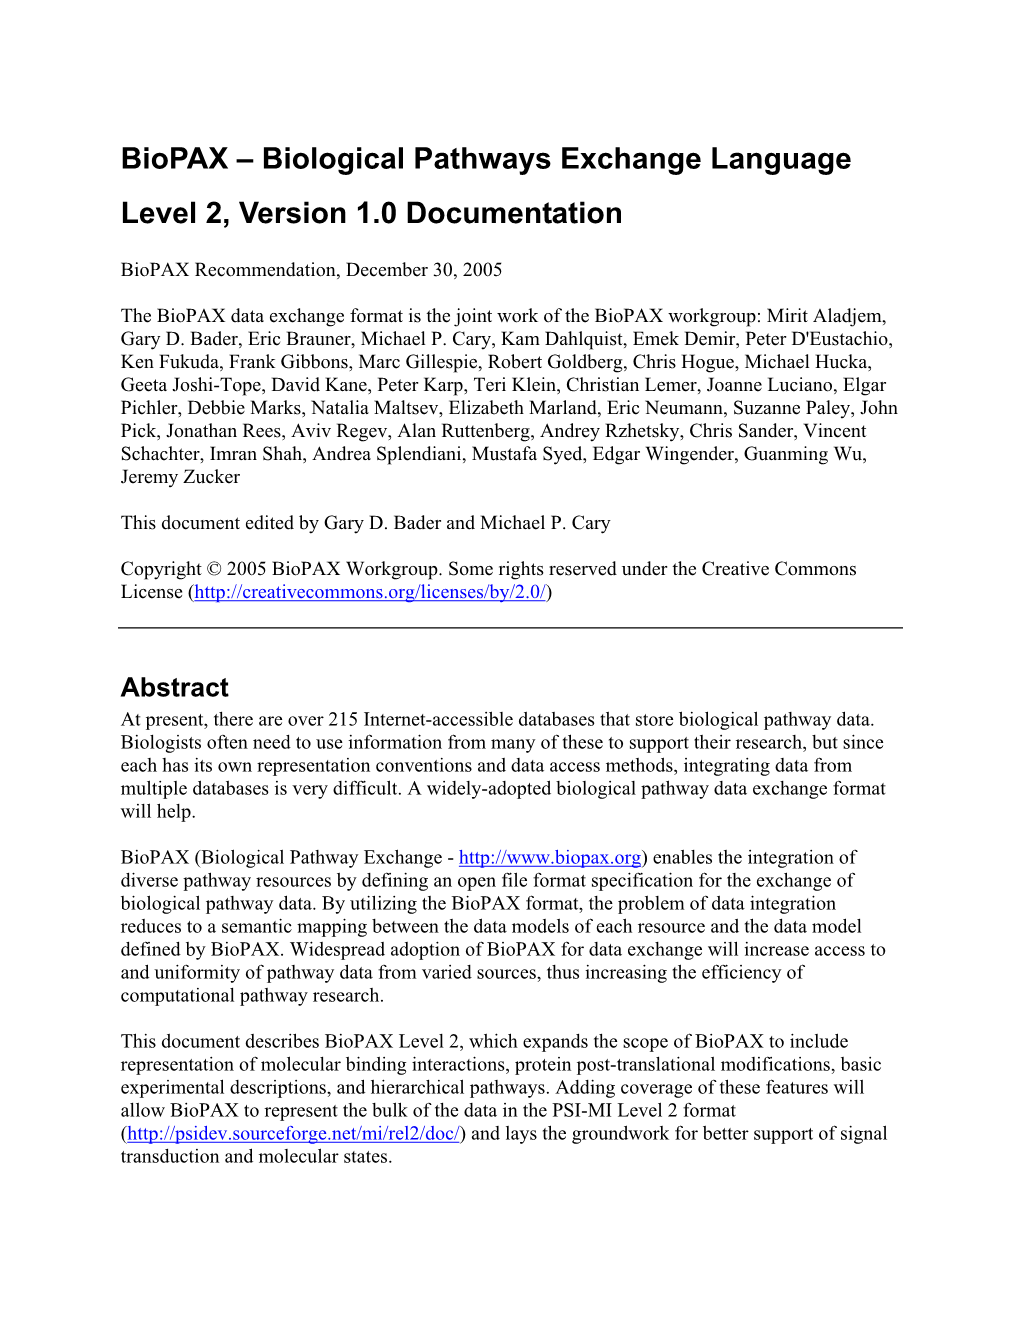 Biological Pathways Exchange Language – Level 1, Version 1